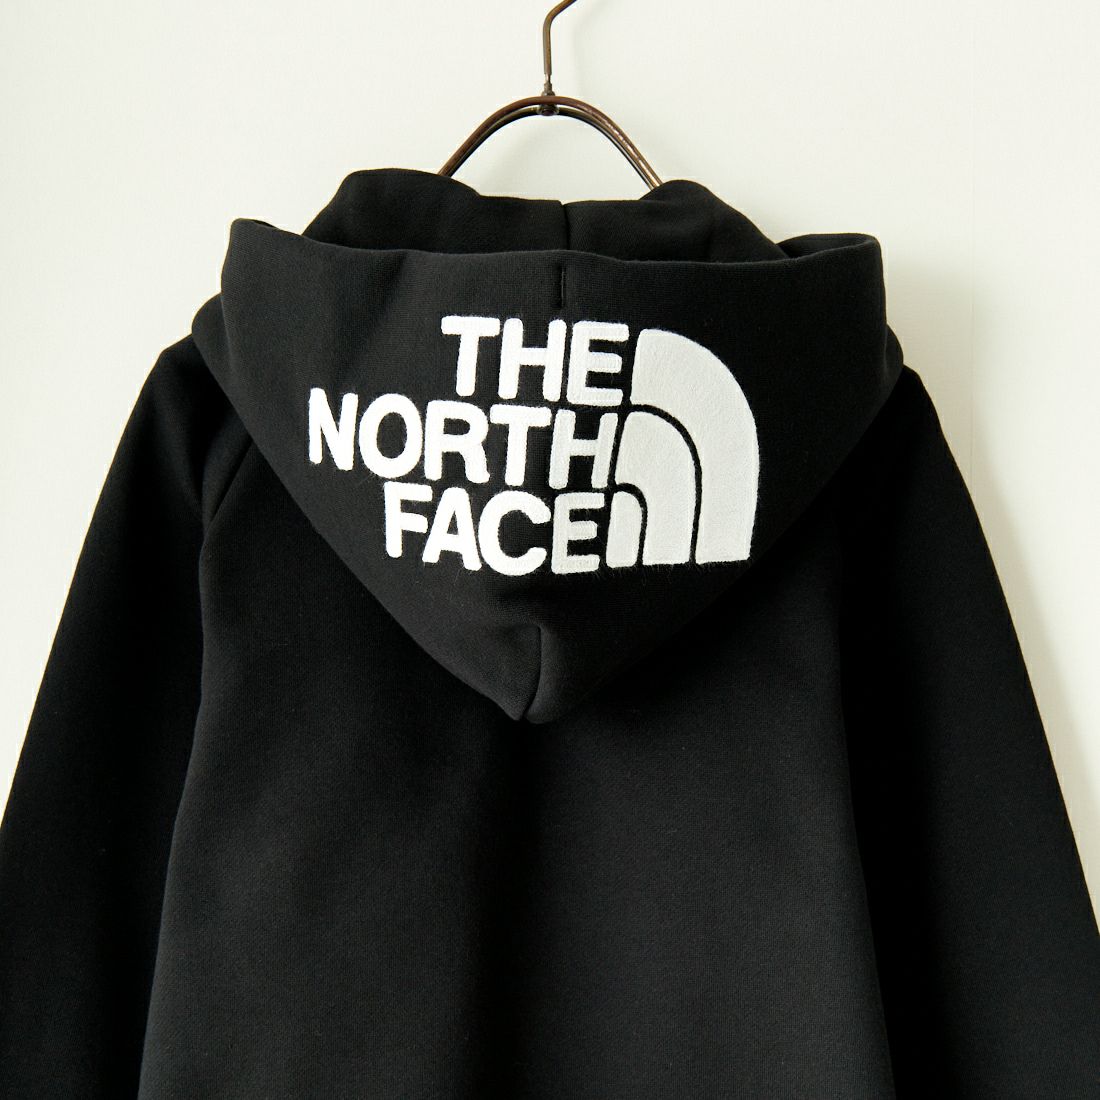 THE NORTH FACE [ザ ノースフェイス] リアビューフルジップフーディ ...